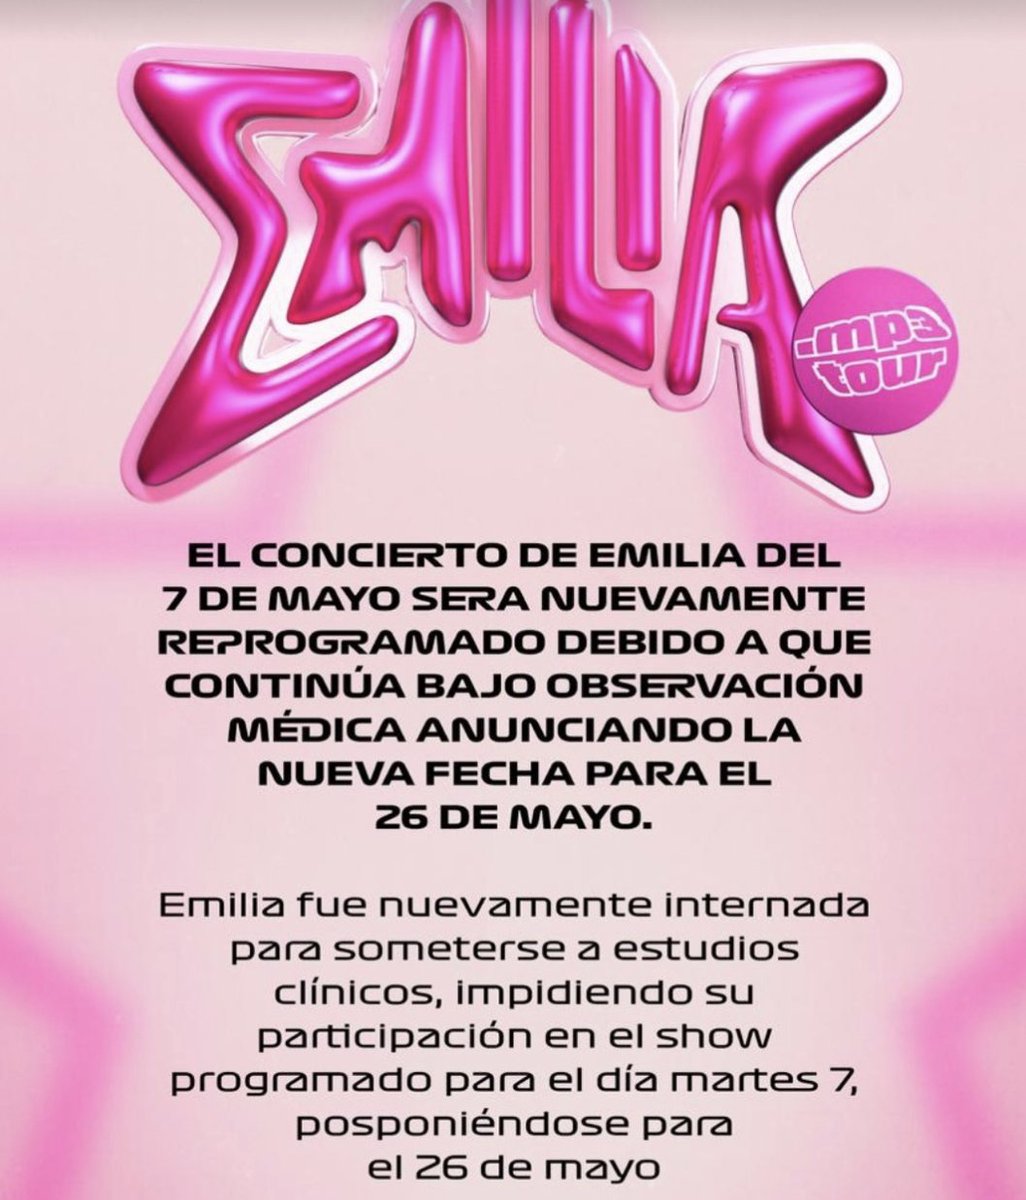 Emilia va haver de cancel·lar el concert de Buenos Aires per problemes de salut i no ha pogut actuar a l'Uruguai. 📹 flaixfm.cat/emilia-mernes-…